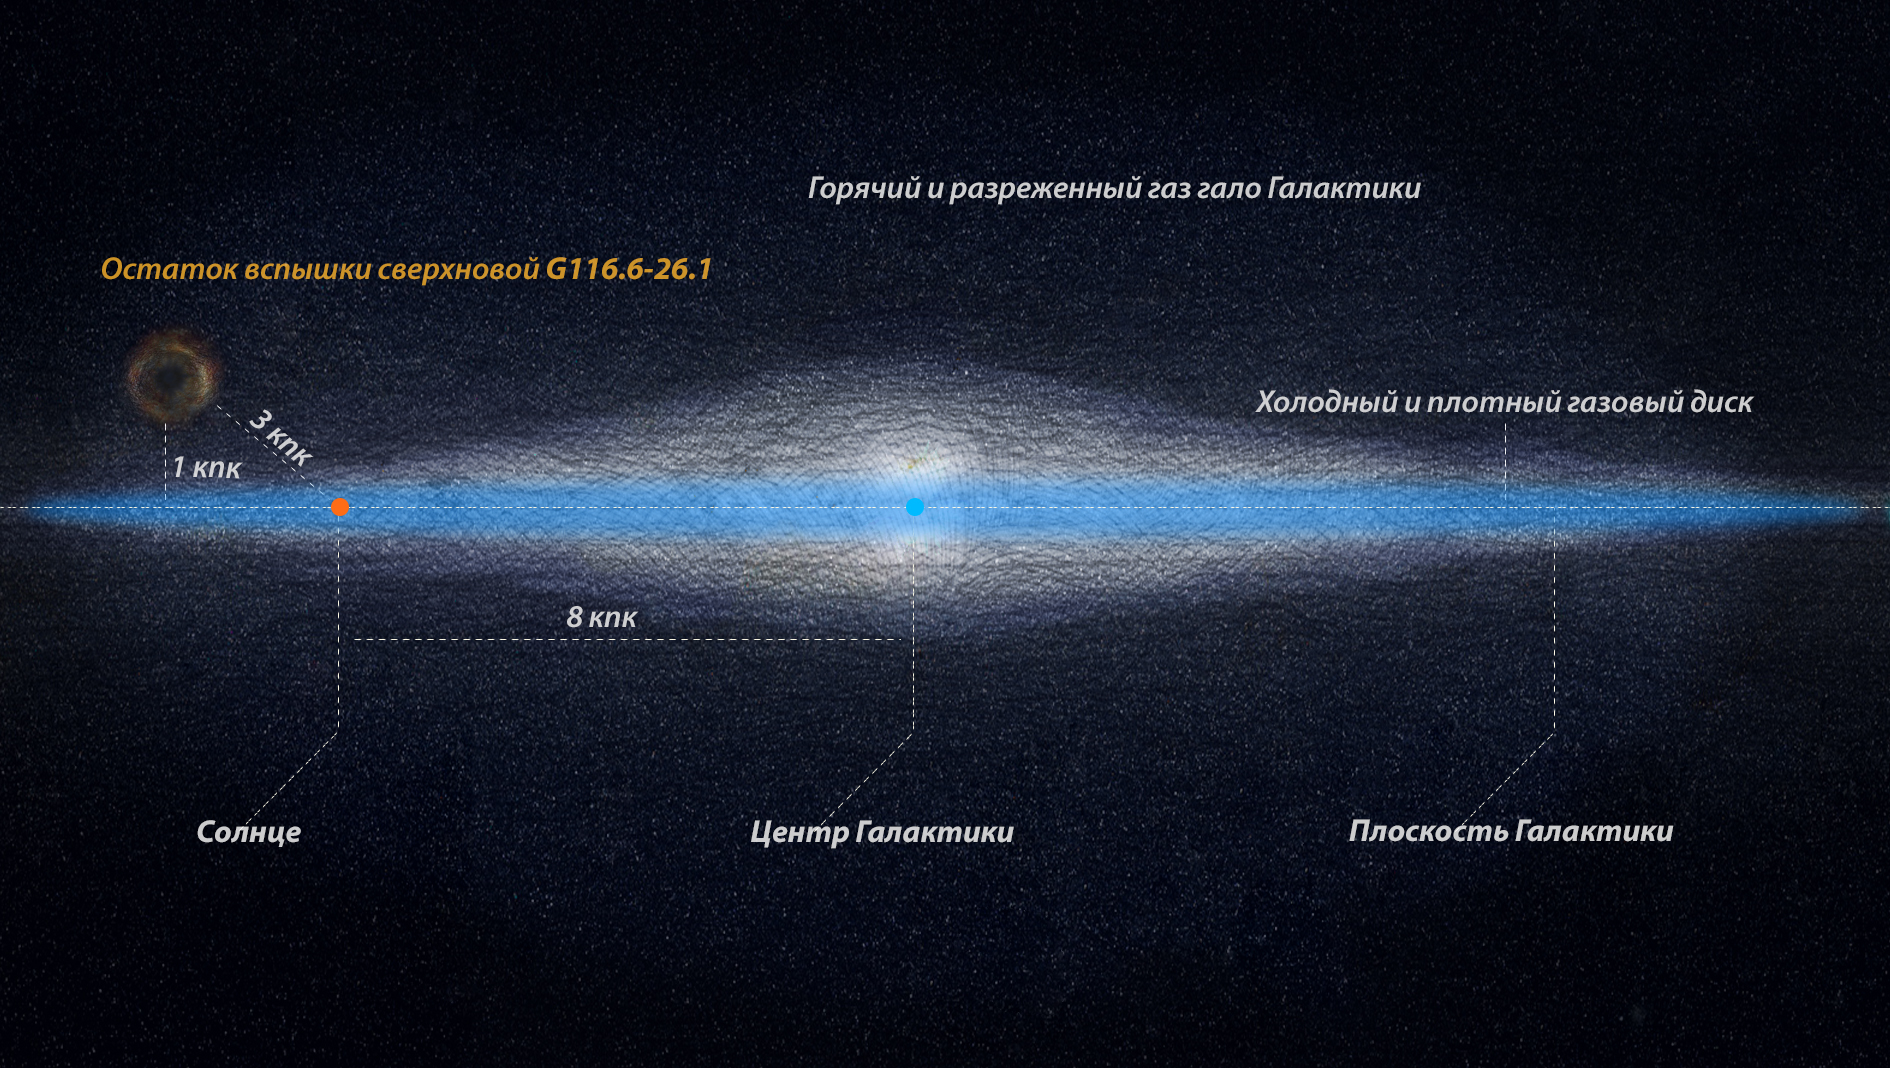 Над галактикой Млечный Путь обнаружили редкий объект